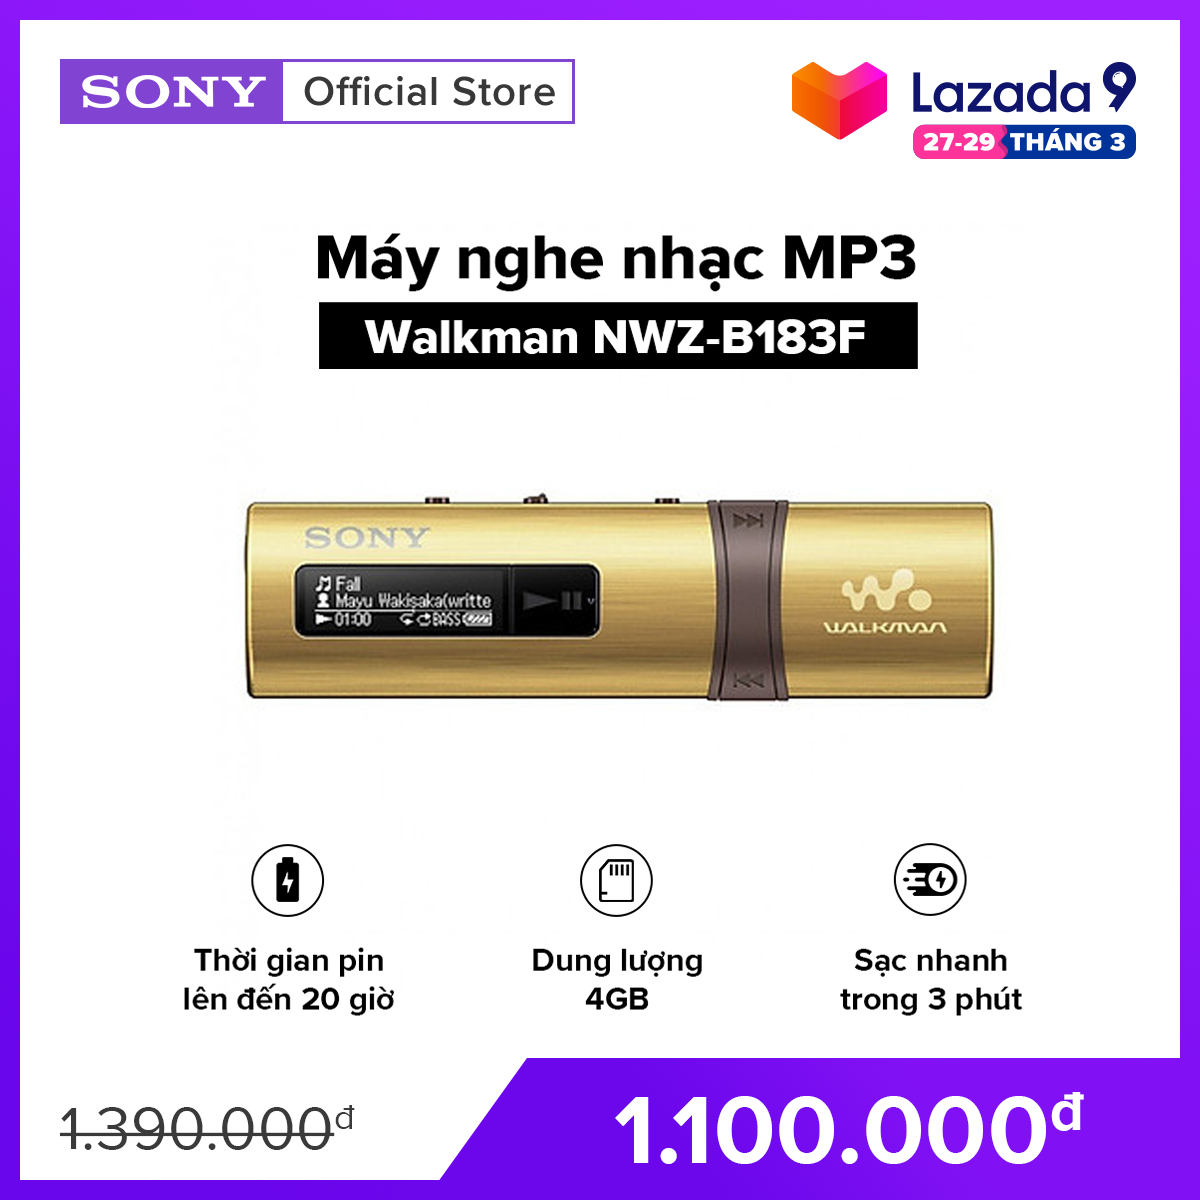 [VOUCHER 90K – HÀNG CHÍNH HÃNG] MÁY NGHE NHAC MP3 Walkman tích hợp USB NWZ-B183F Dung lượng 4GB cho khoảng 900 bài hát Thời gian sử dụng pin lên đến 20 giờ Sạc nhanh trong 3 phút